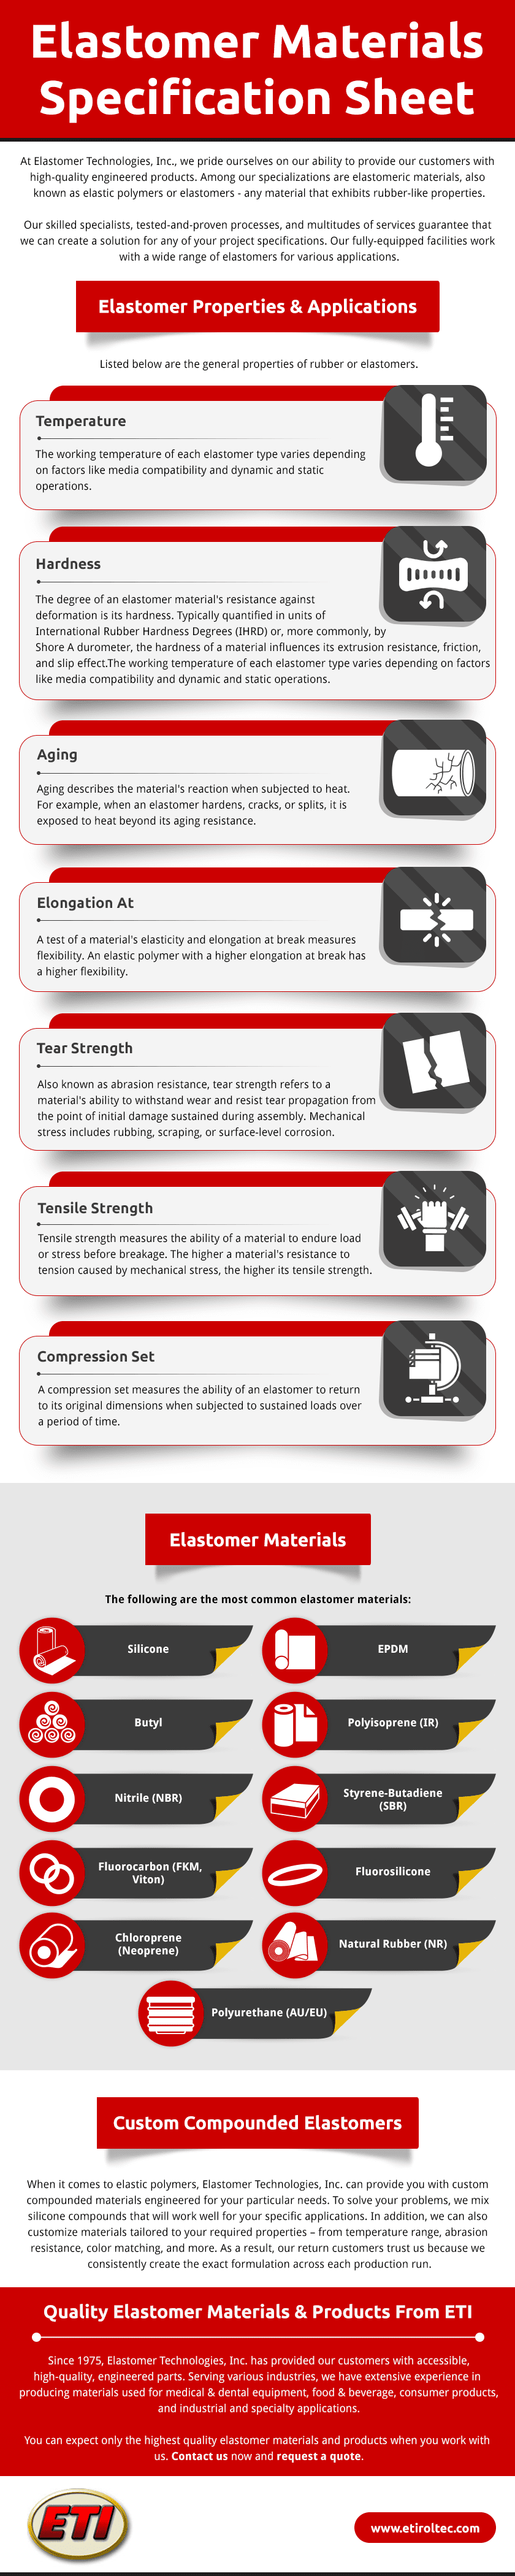 Elastomer Materials Specification Sheet